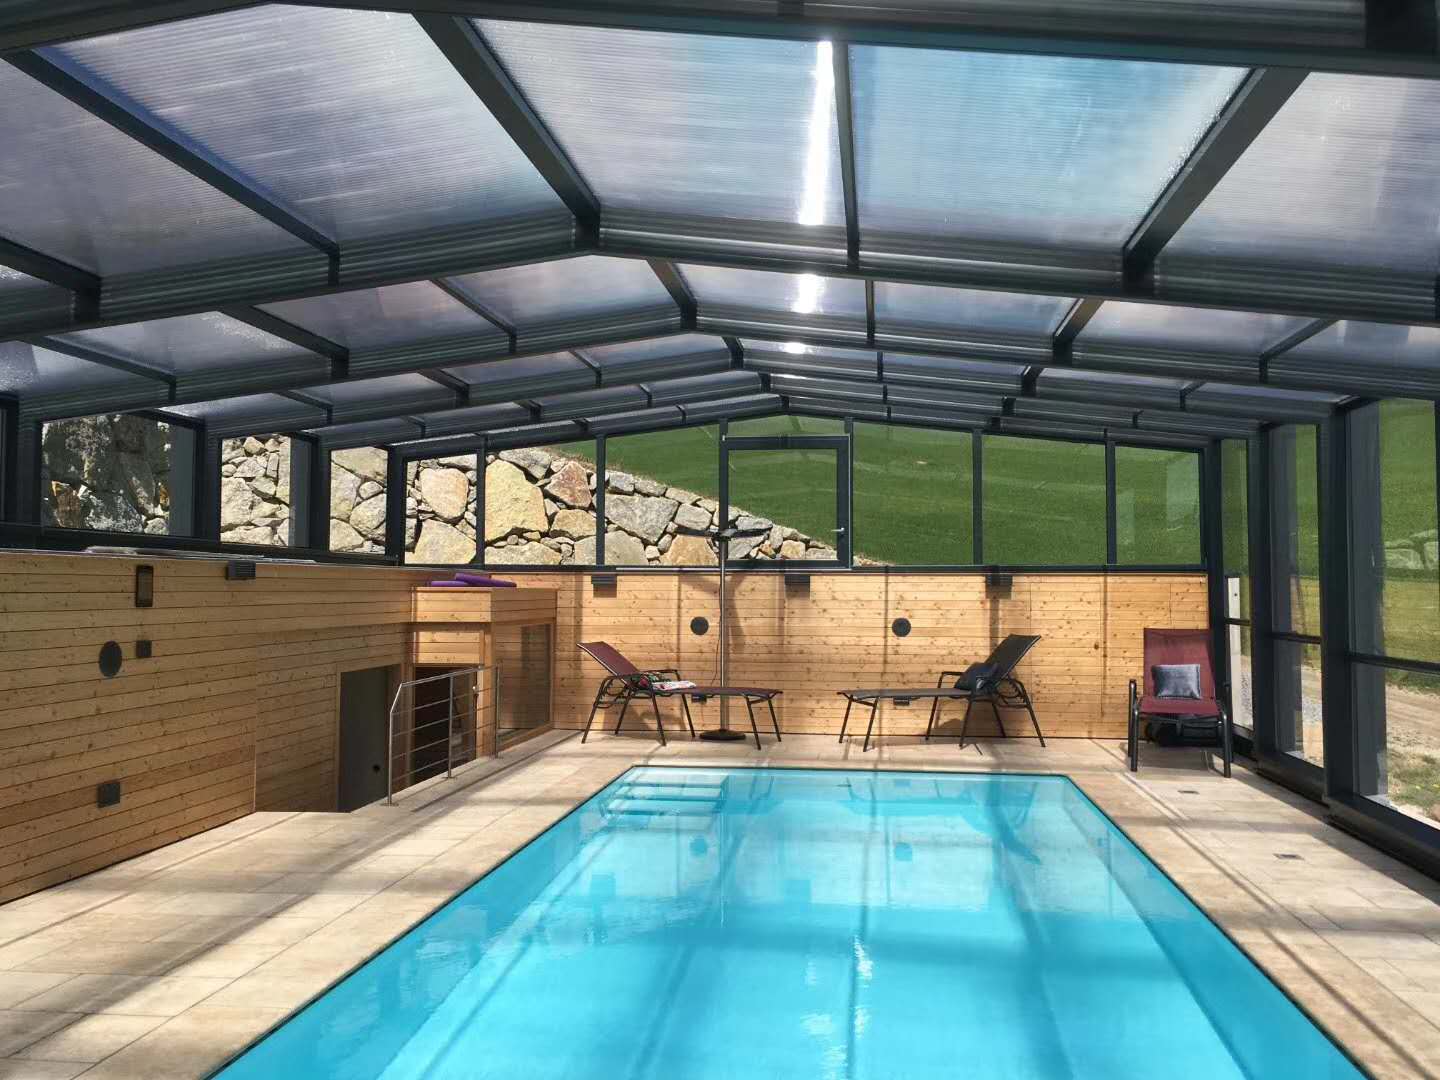 建造一个健身房泳池需要了解的知识-泳池设备系统